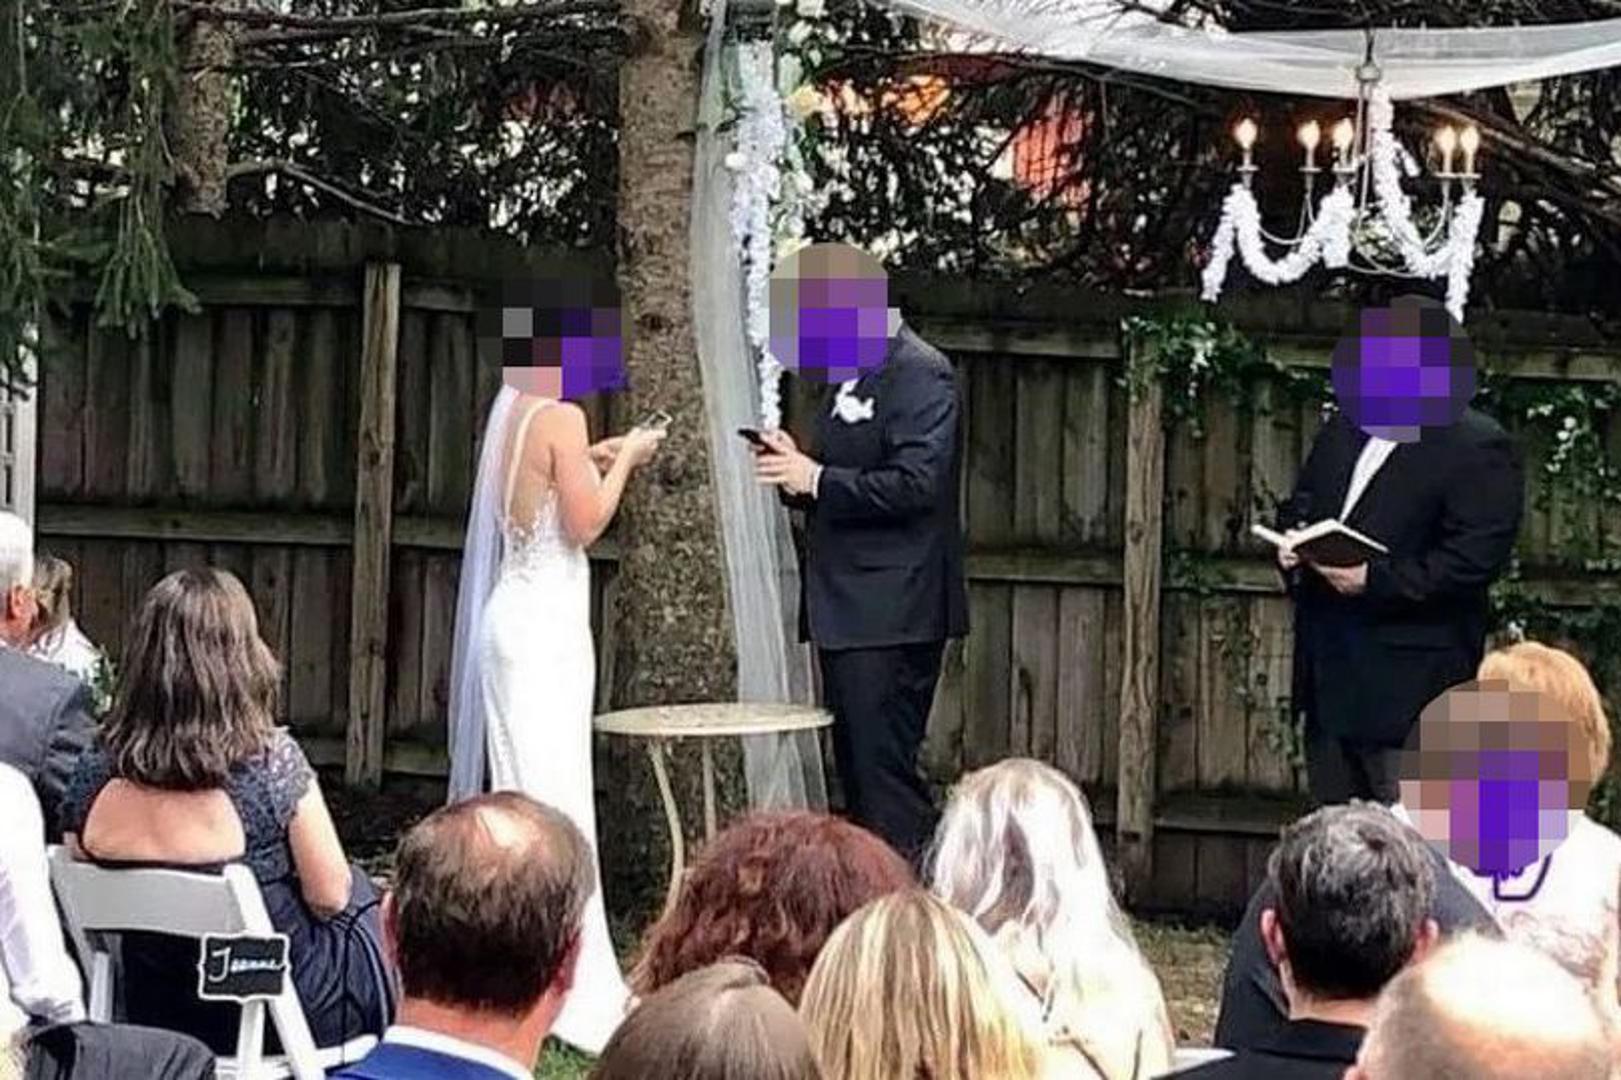 Fotografija mladenaca koji stoje ispred svojih gostiju usred ceremonije vjenčanja šokirala je mnoge. Naime, nekoliko trenutaka nakon što su izrekli sudbonosno 'da' par je uzeo svoje pametne telefone kako bi promijenili svoj bračni status na Facebooku.